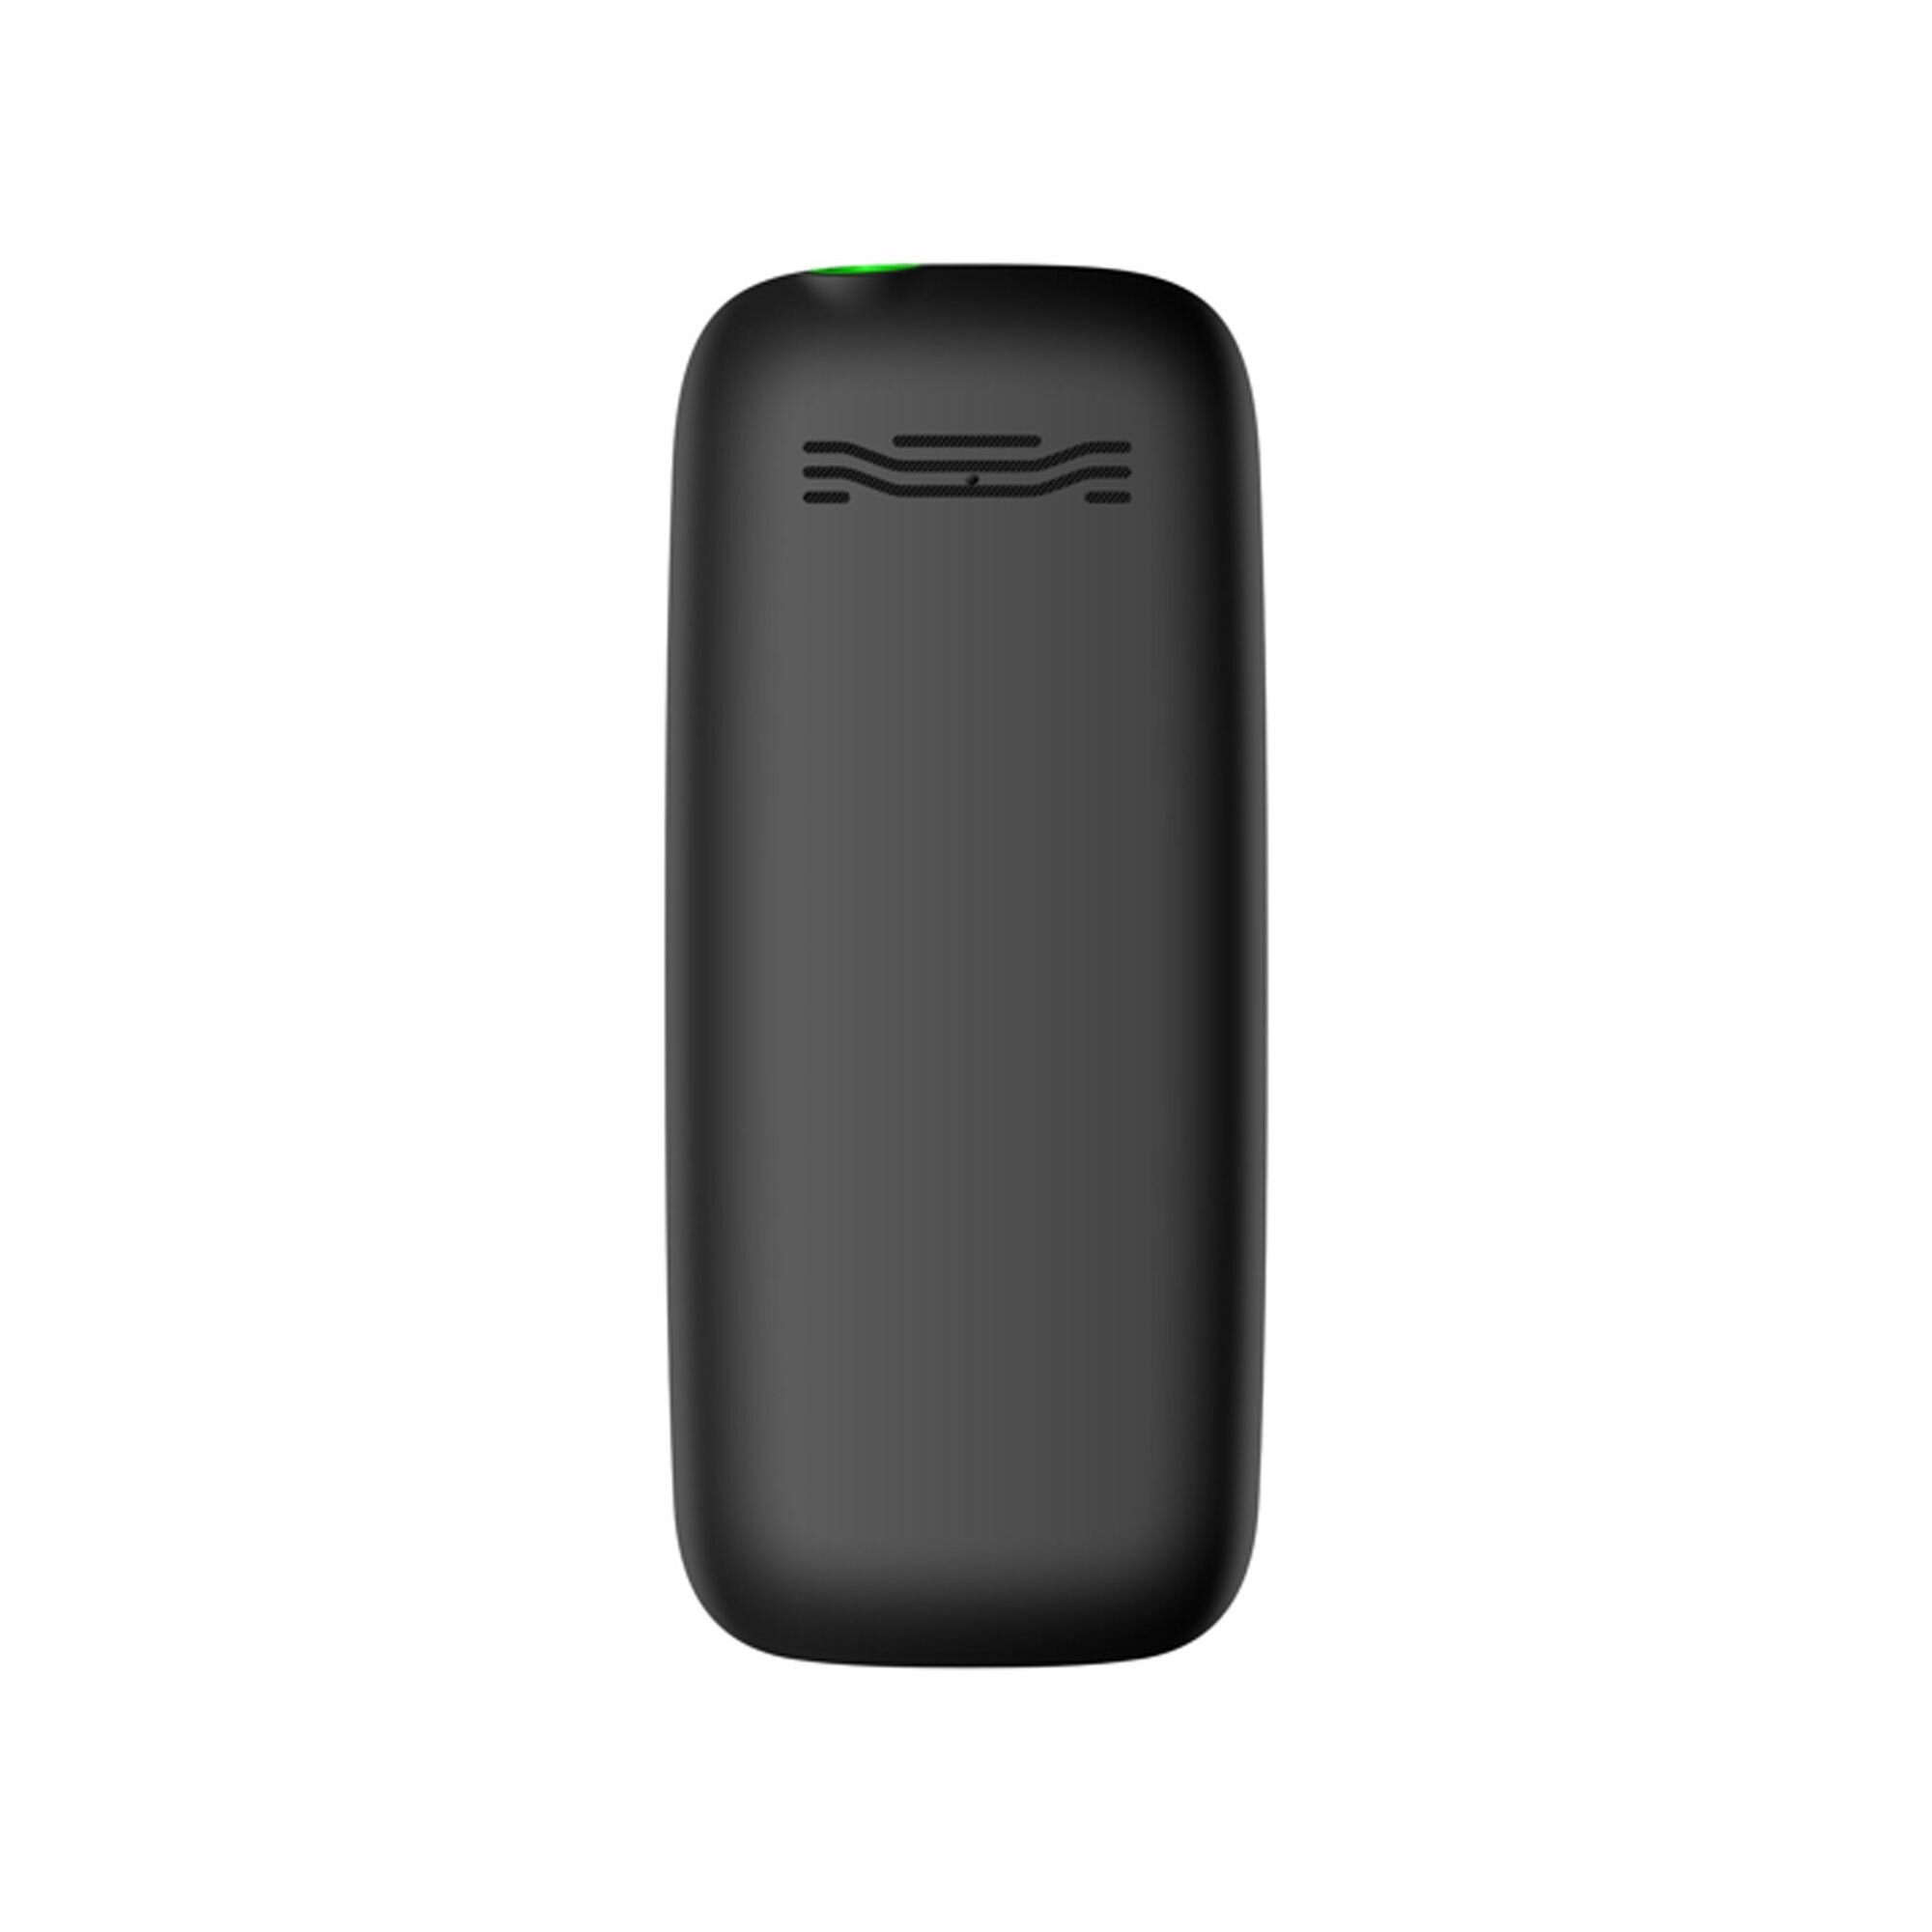 Мобильный телефон Fontel FP200, сотовый телефон, черный+зеленый